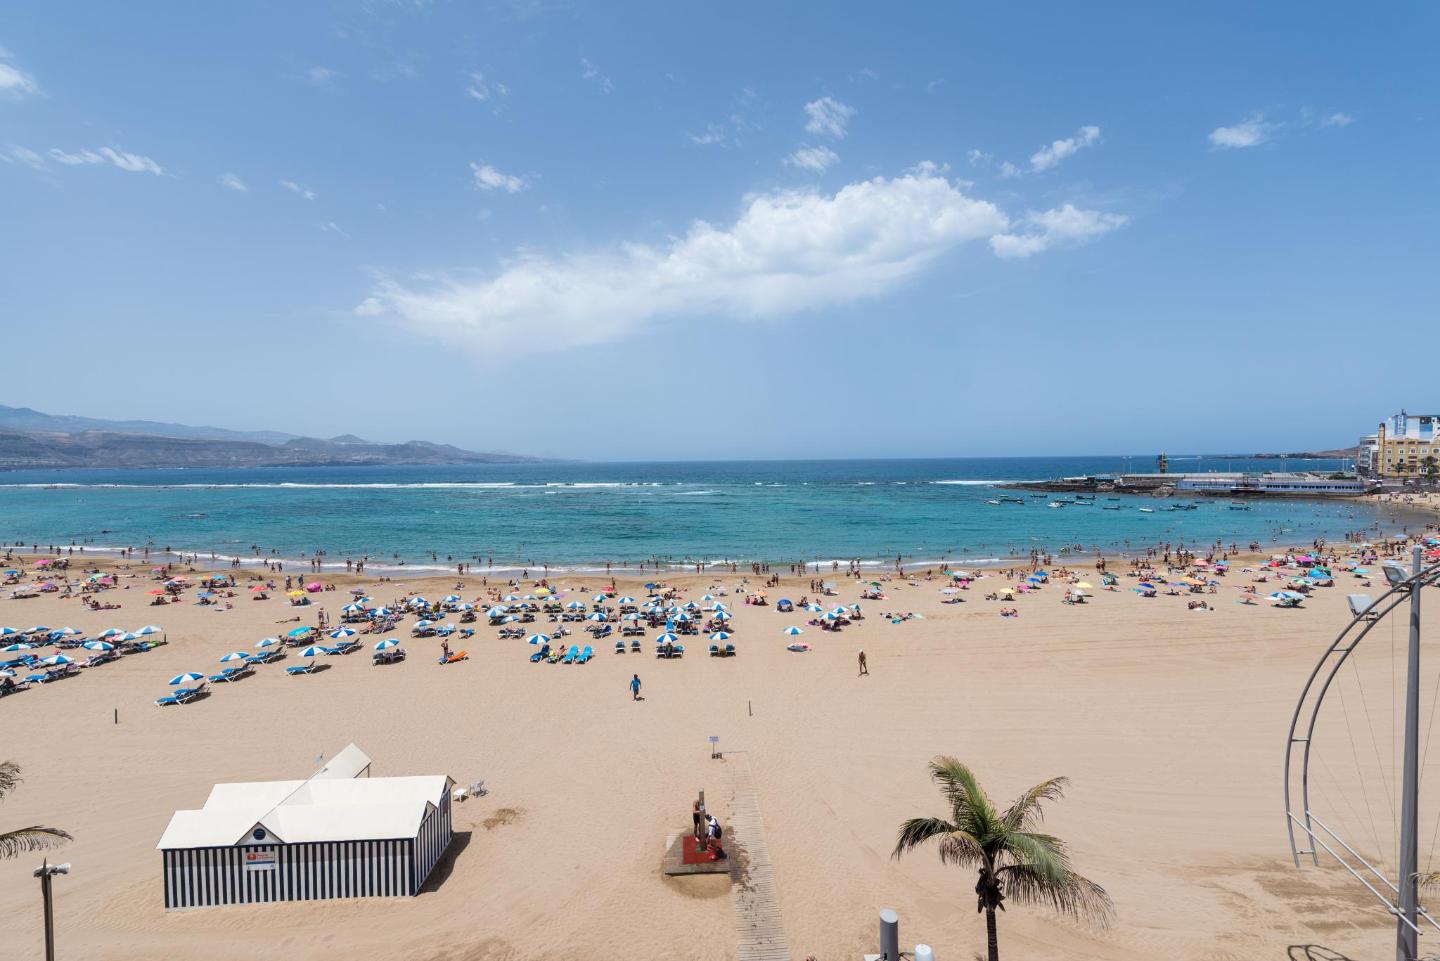 أفضل 10 فنادق شاطئية في لاس بالماس دي غران كاناريا، إسبانيا | Booking.com